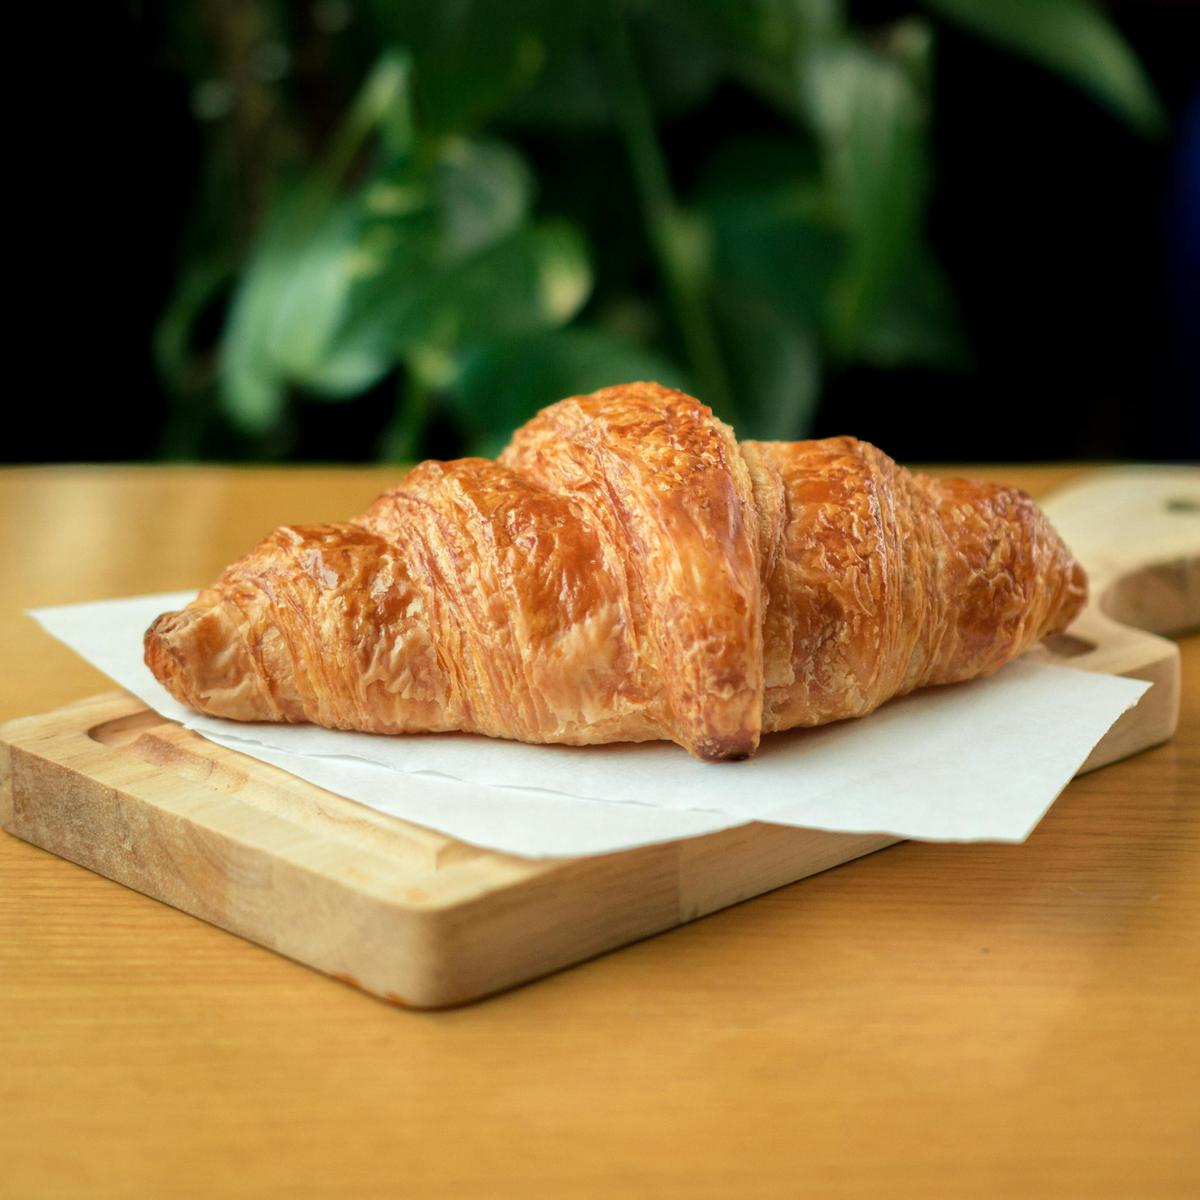 Croissant casero | Aprende a preparar este manjar en pocos pasos
(Fuente: Pexels)